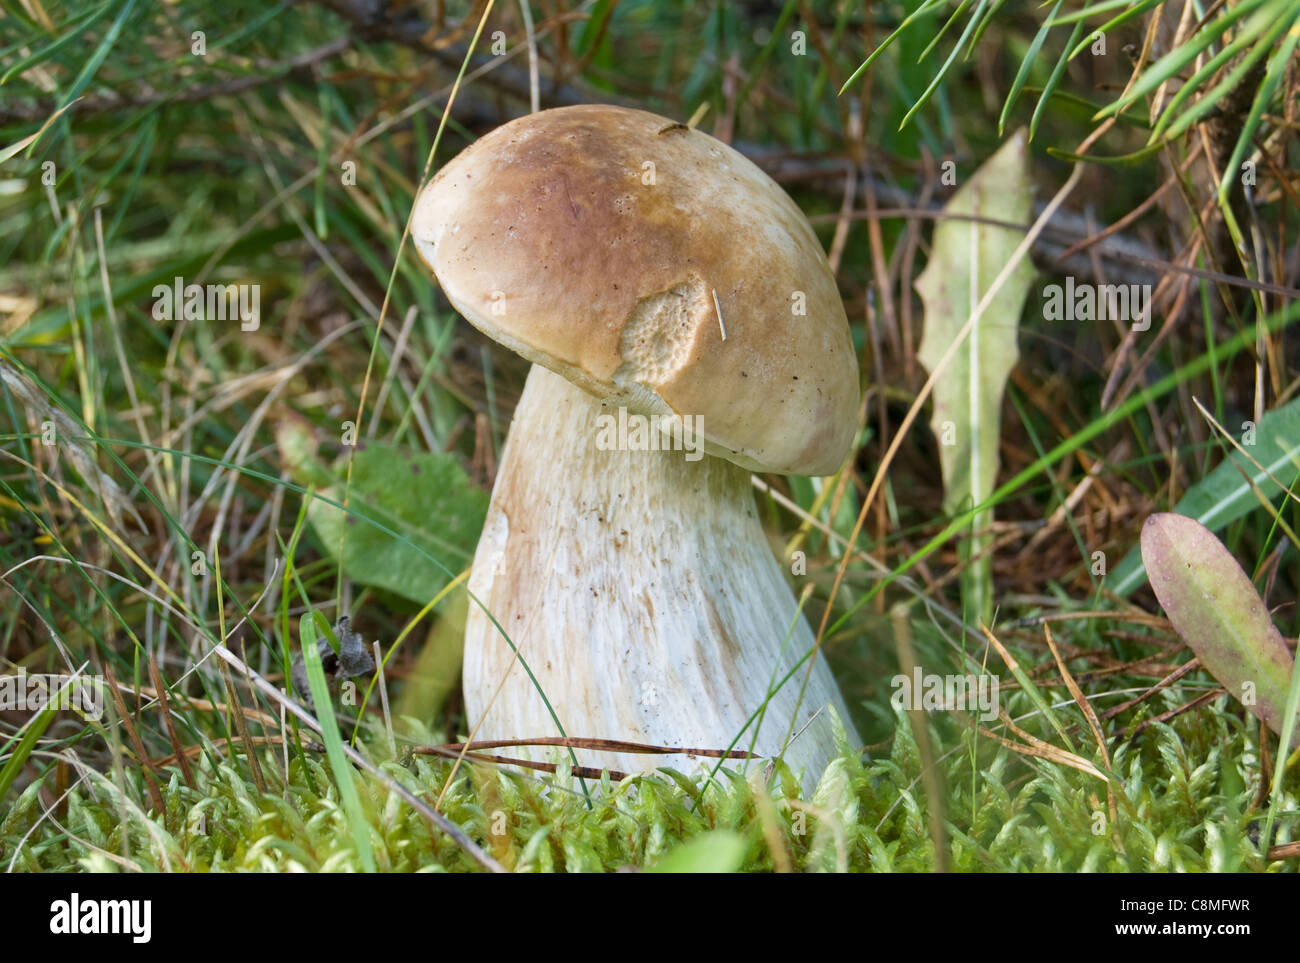 white mushroom in greenery to the grass Stock Photo